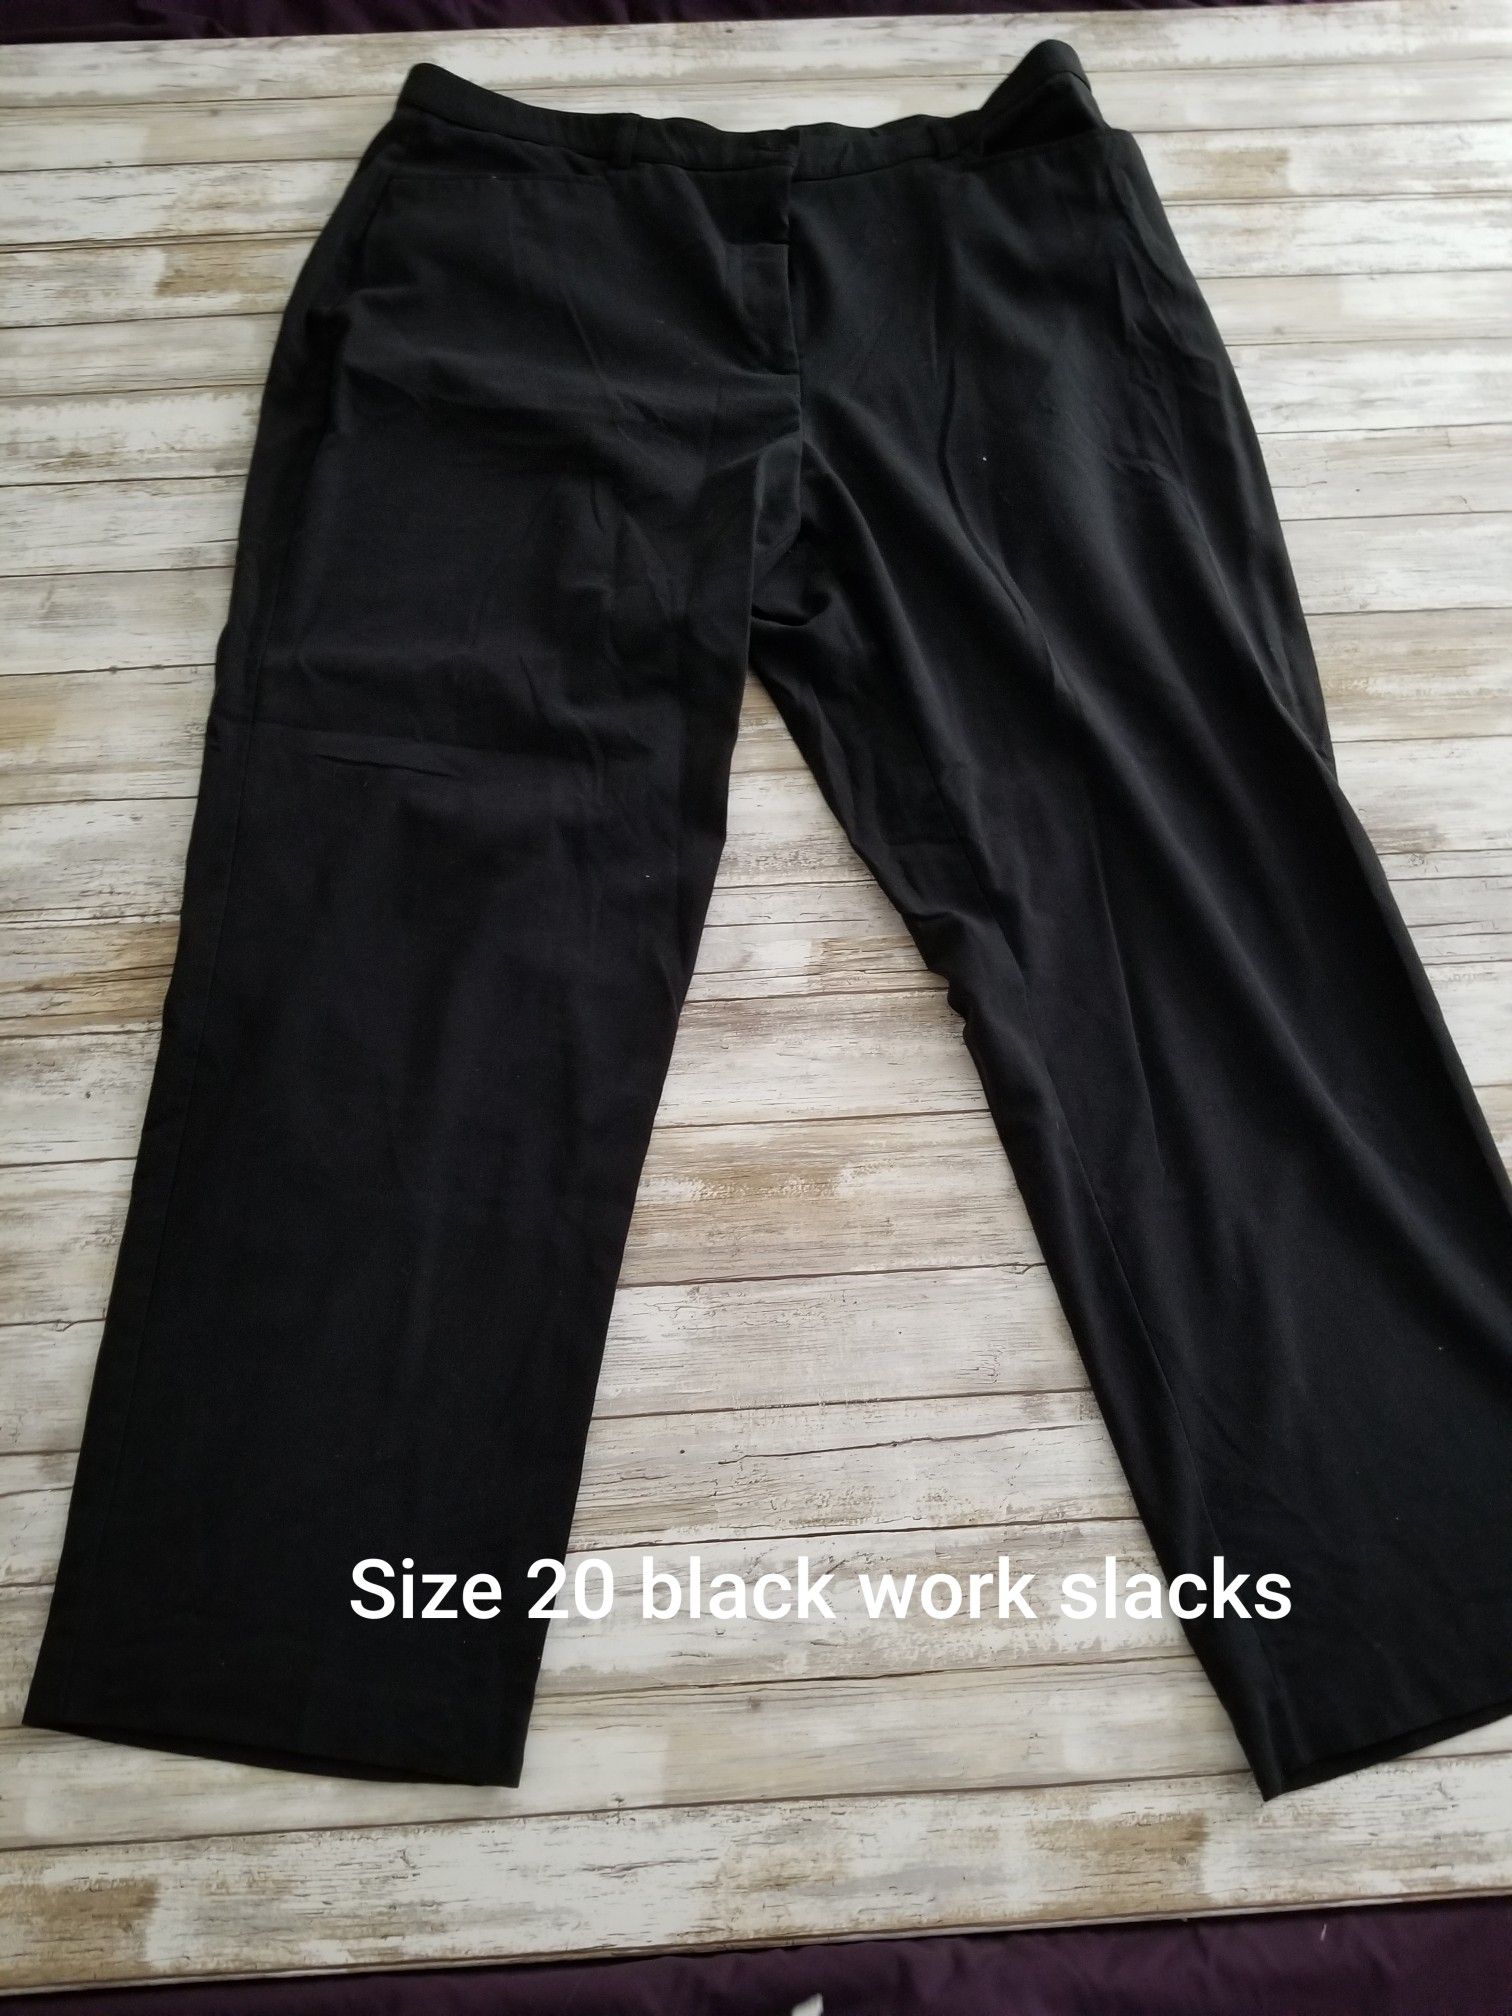 Size 20 black work pants